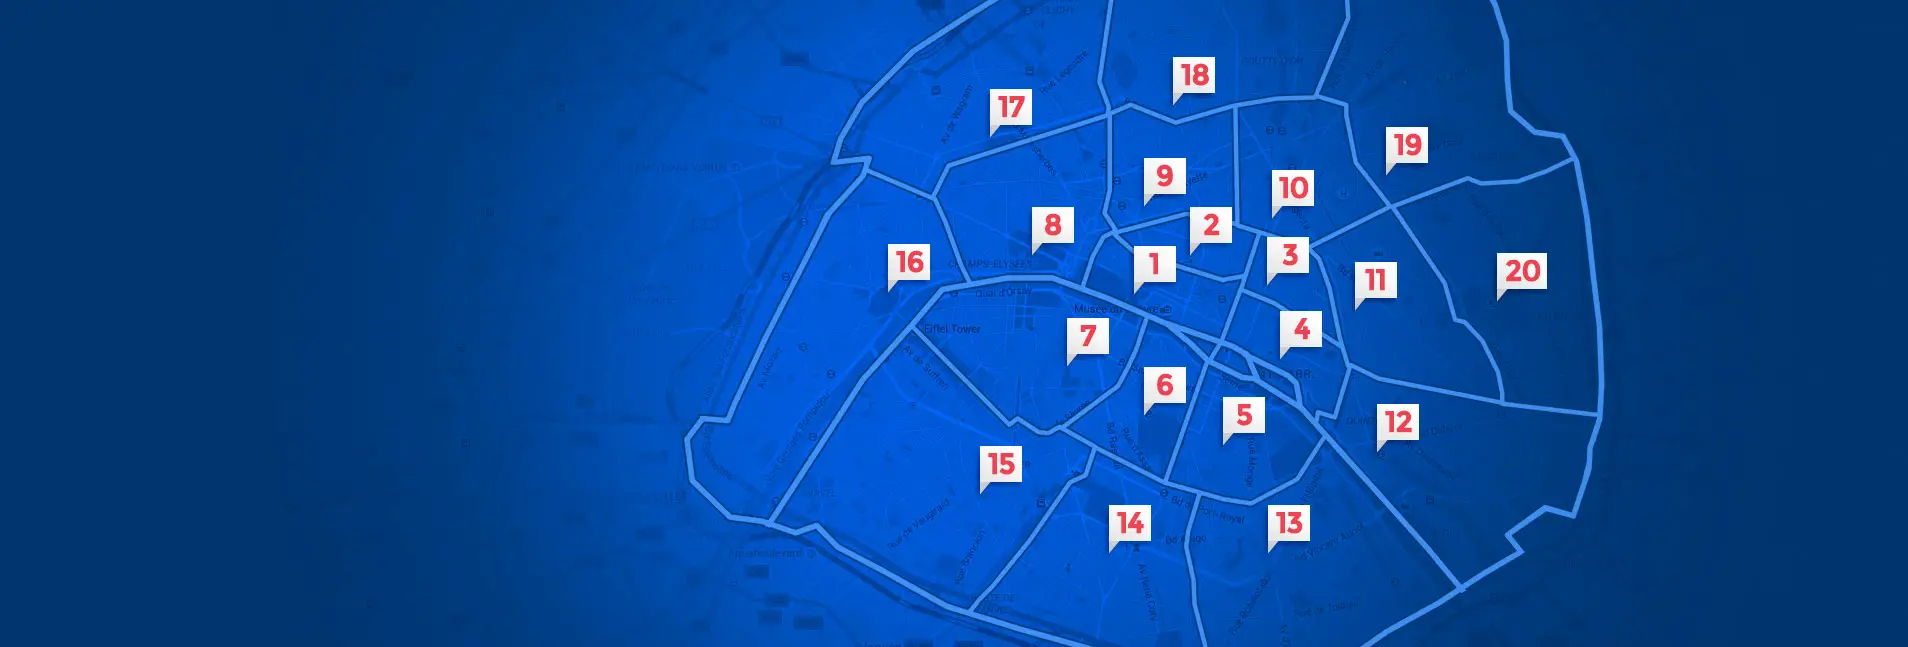 Map of Paris arrondissements